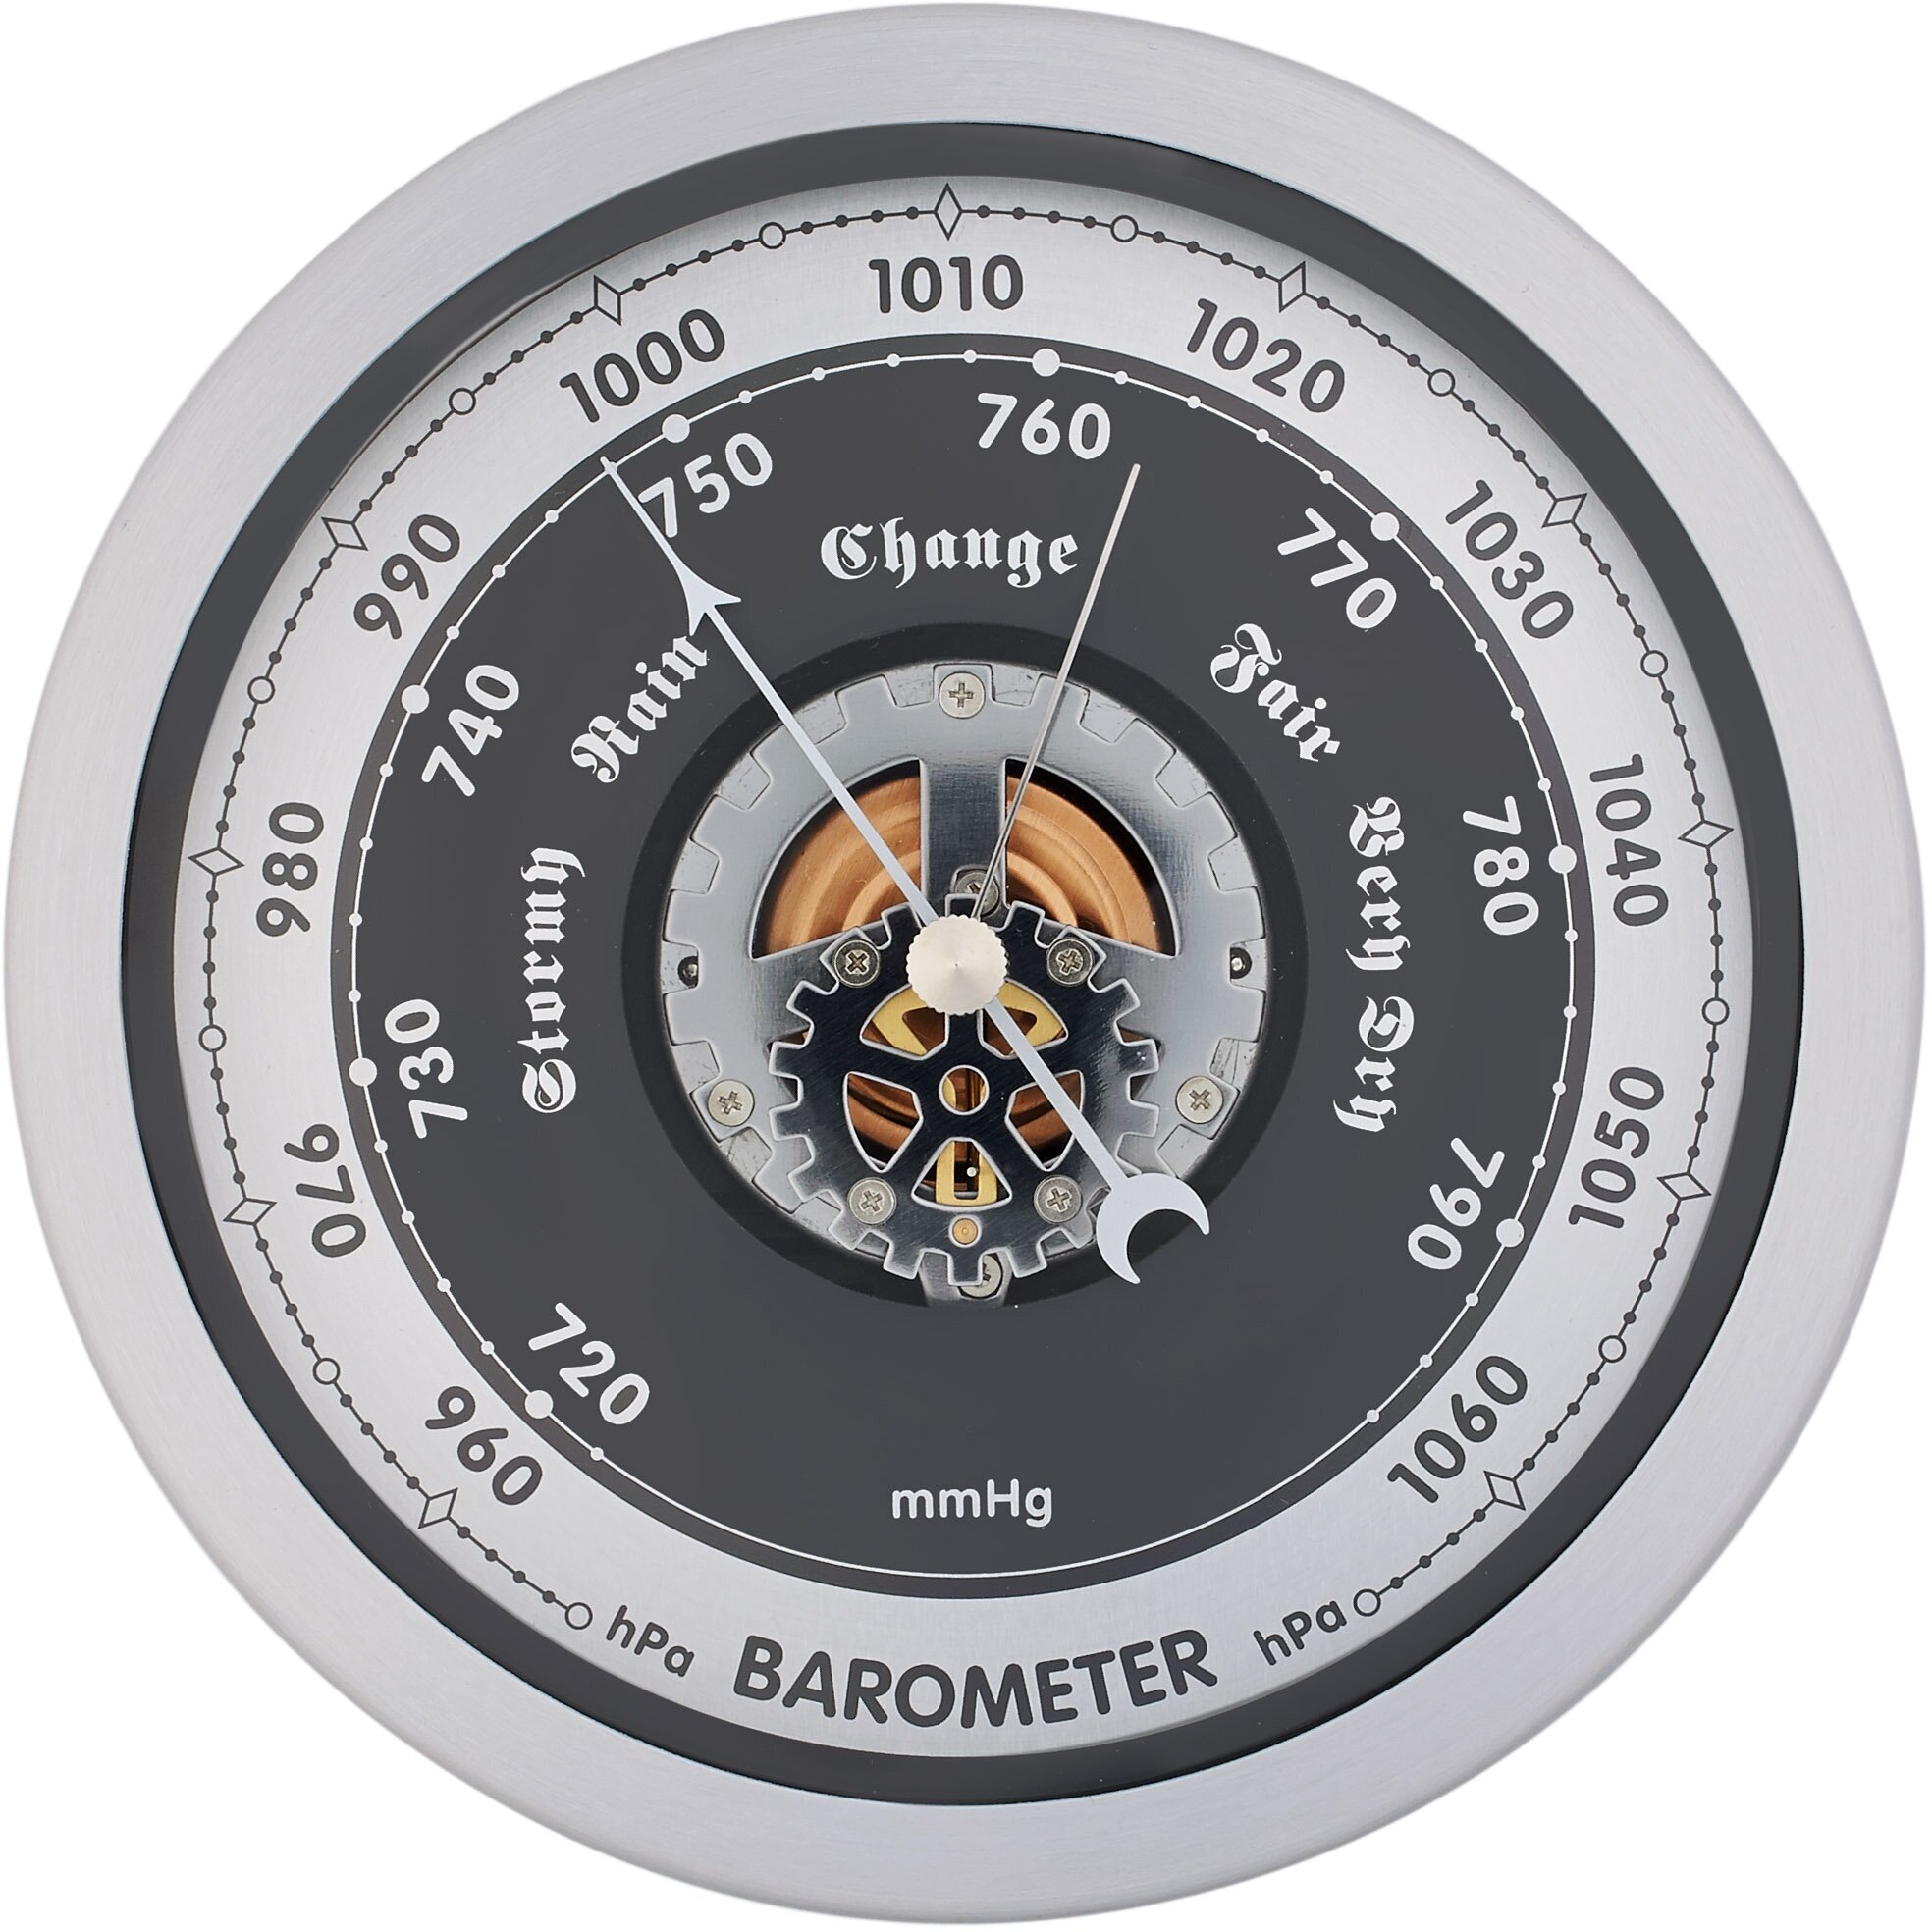 Барометр бриг БМ91320 алюминиевая , механизм барометр, корпус (круг) алюминиевый для наружного применения.